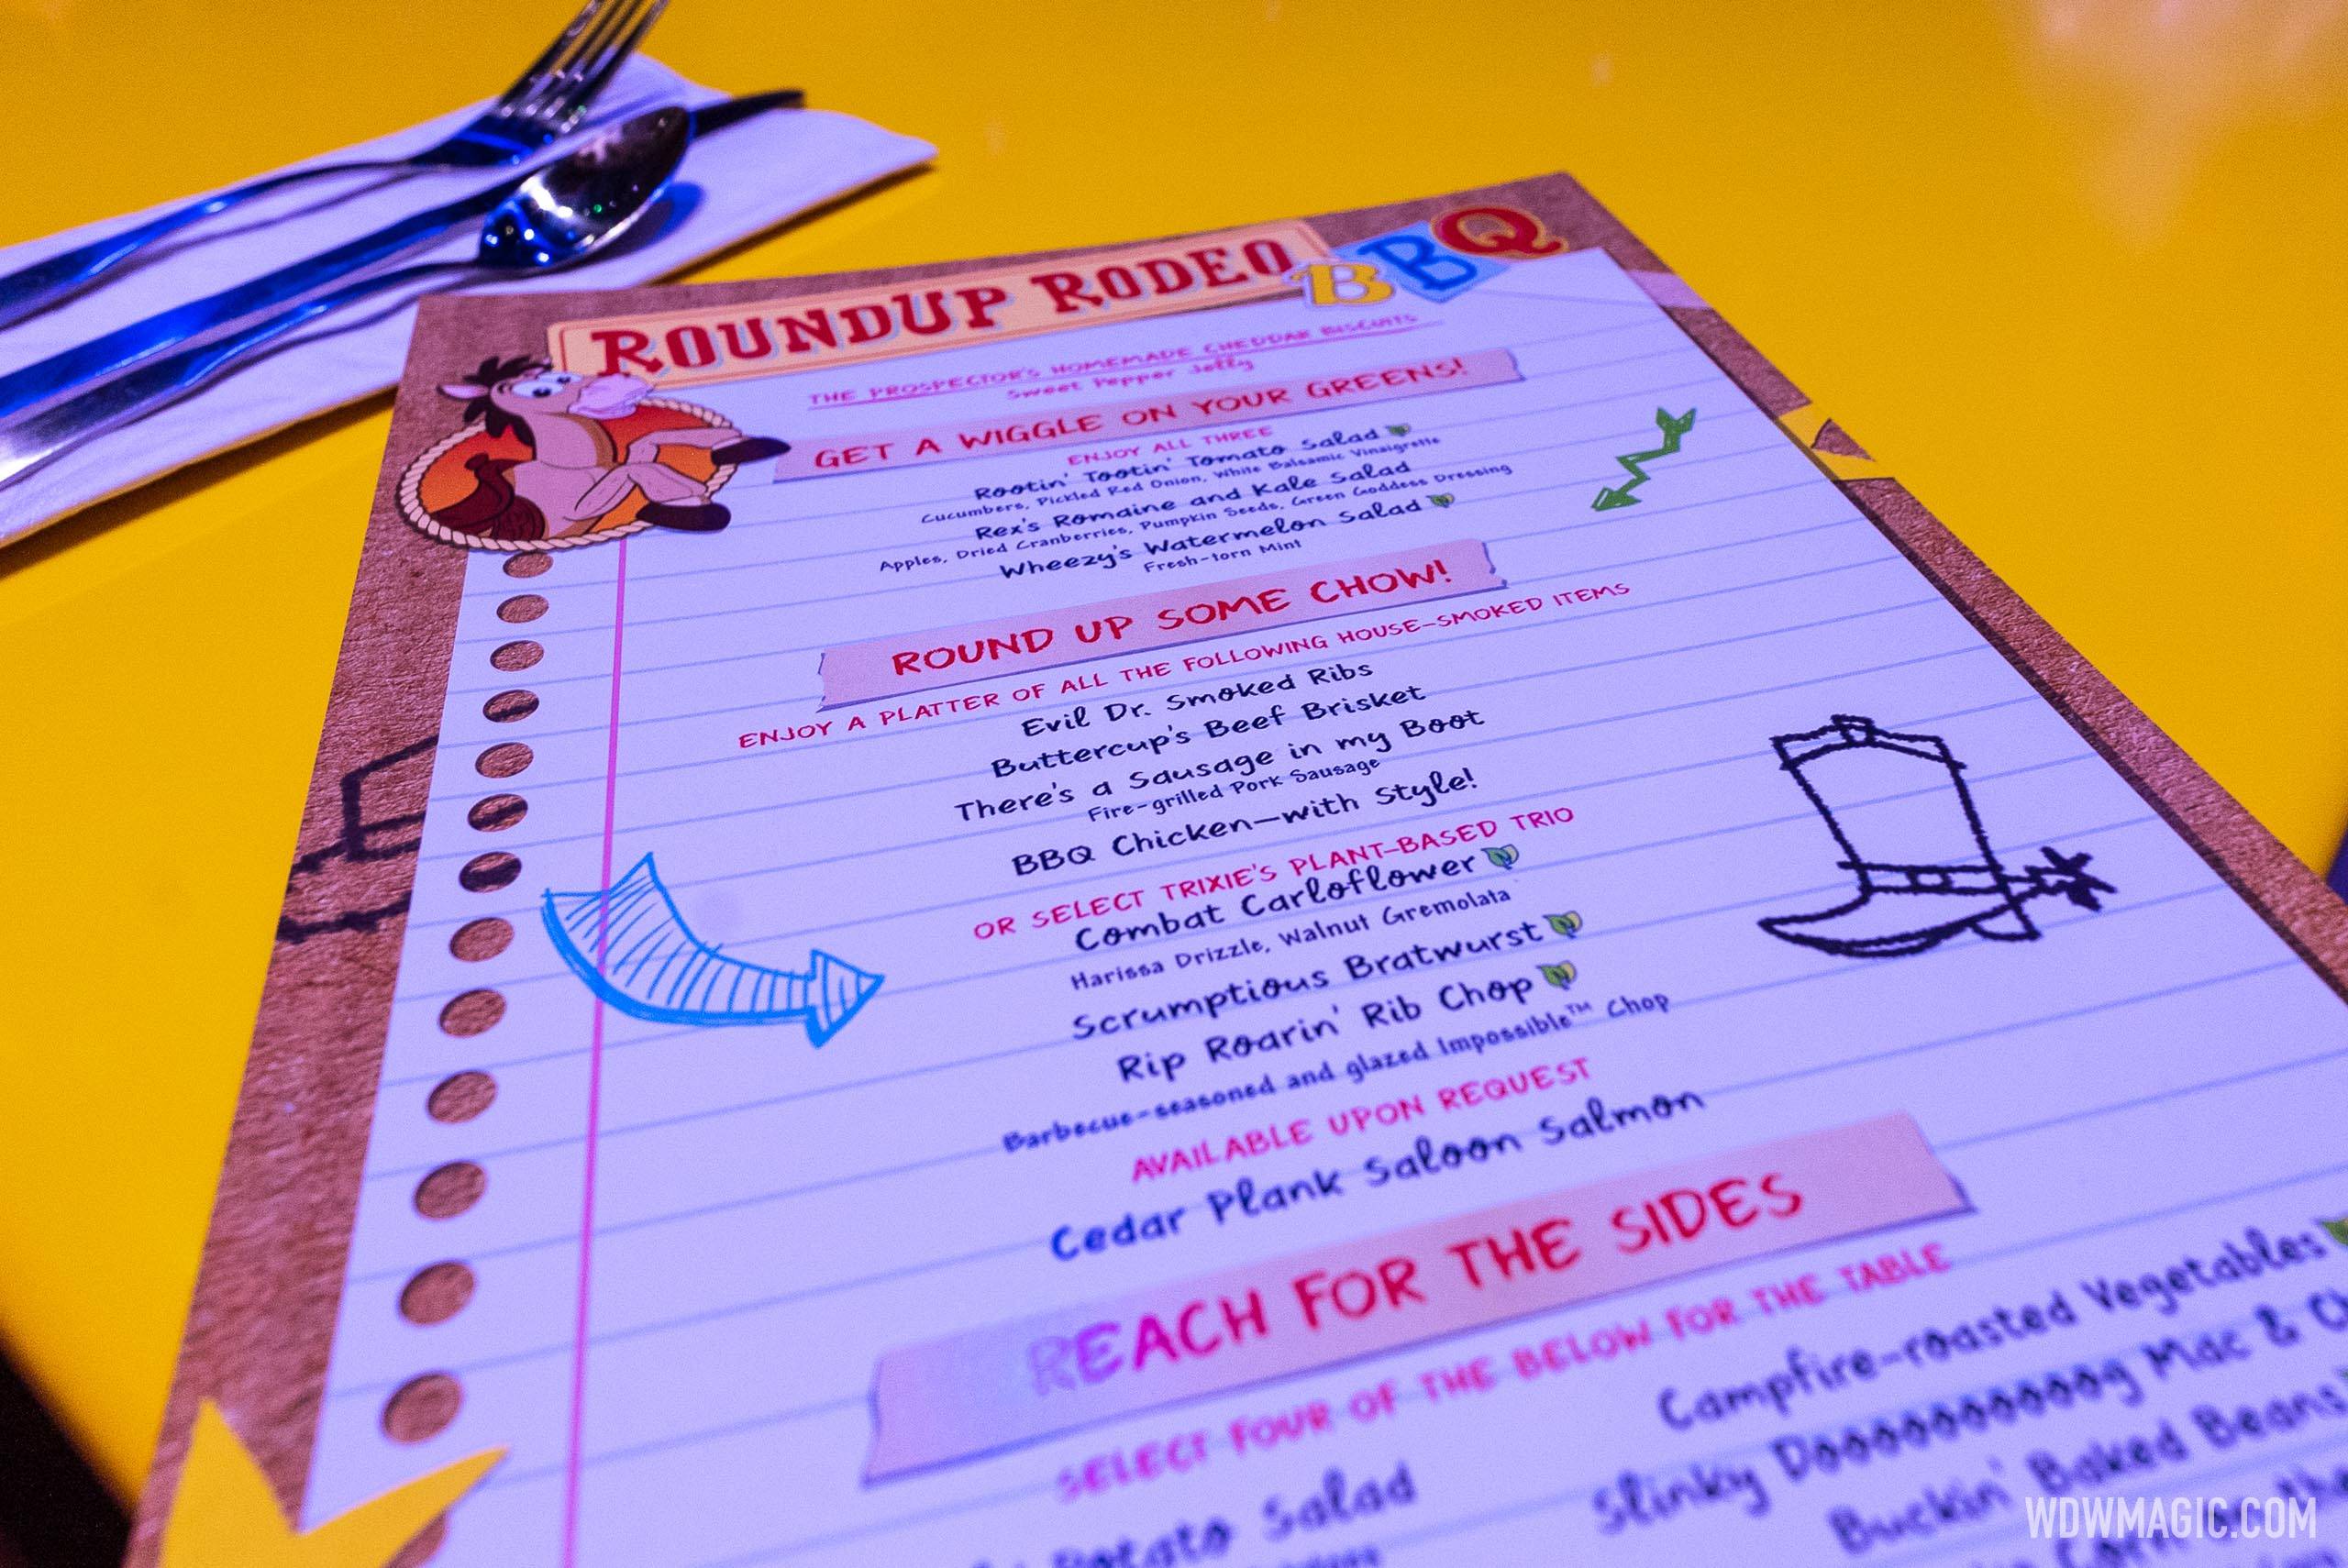 Roundup Rodeo BBQ menu